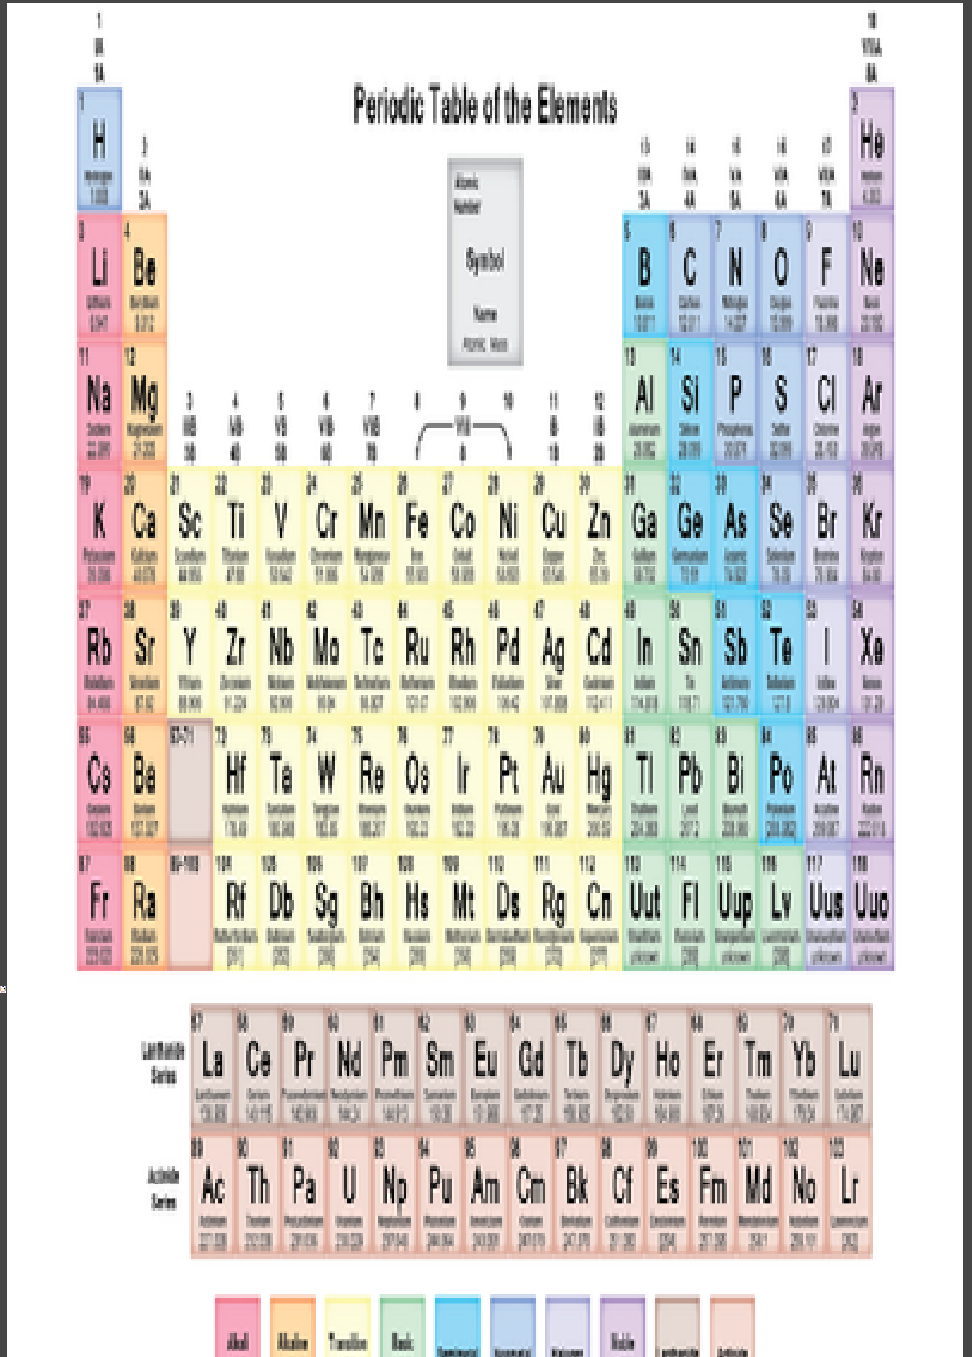 The periodic table | Chemicial Wikia | Fandom